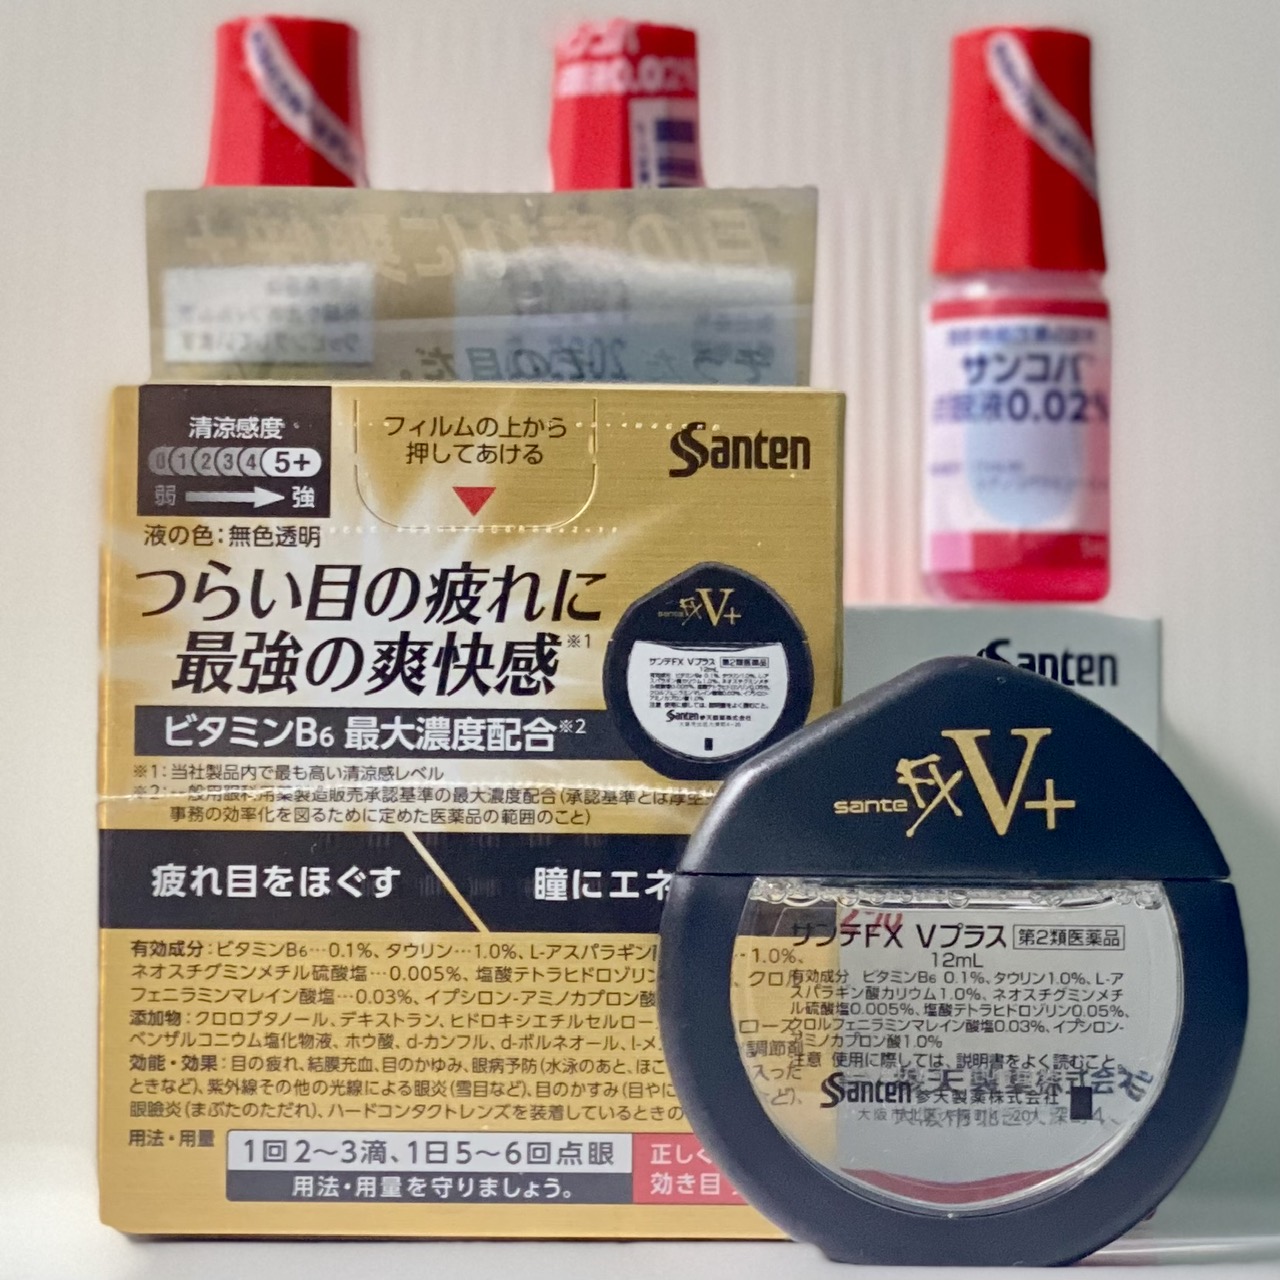 Nước Nhỏ Mắt Santen Fx V+ Nhật Bản 12ml - 1 hộp